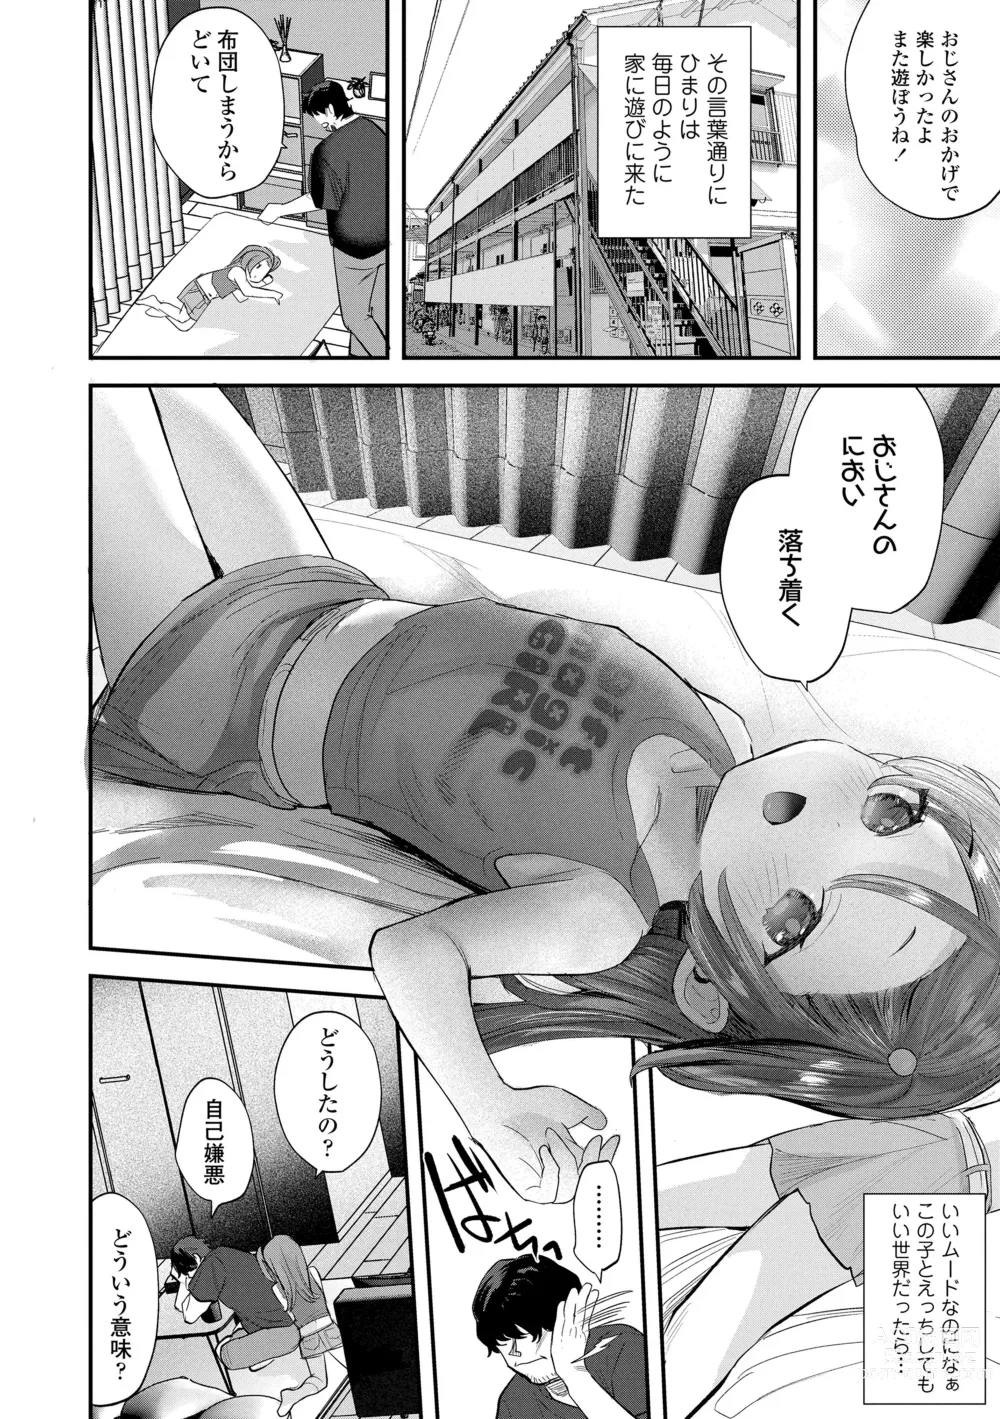 Page 8 of manga Chisanakonokoi